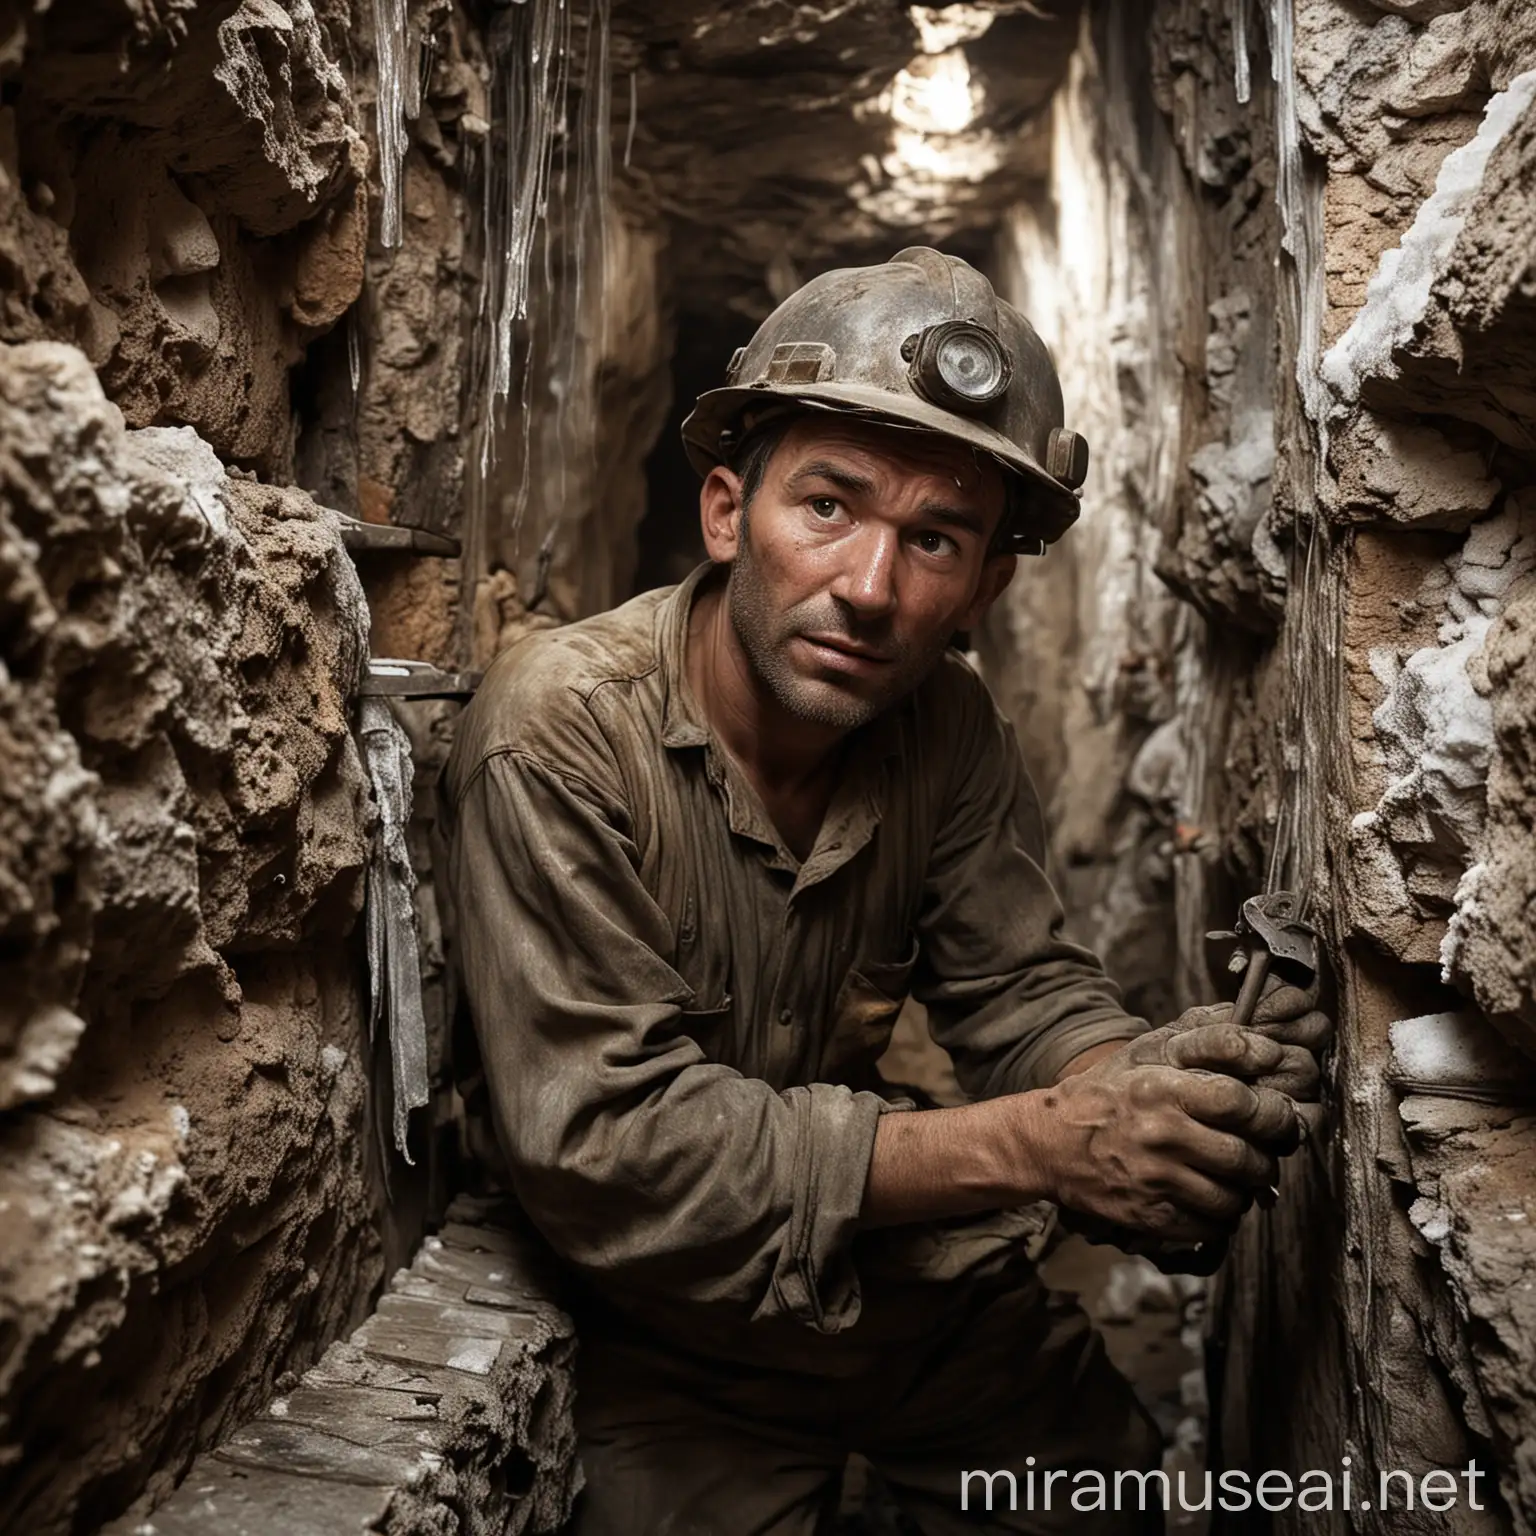  minatori delle miniere di sale, che lavorando in ambienti molto angusti, sbattevano spesso la testa contro le pareti